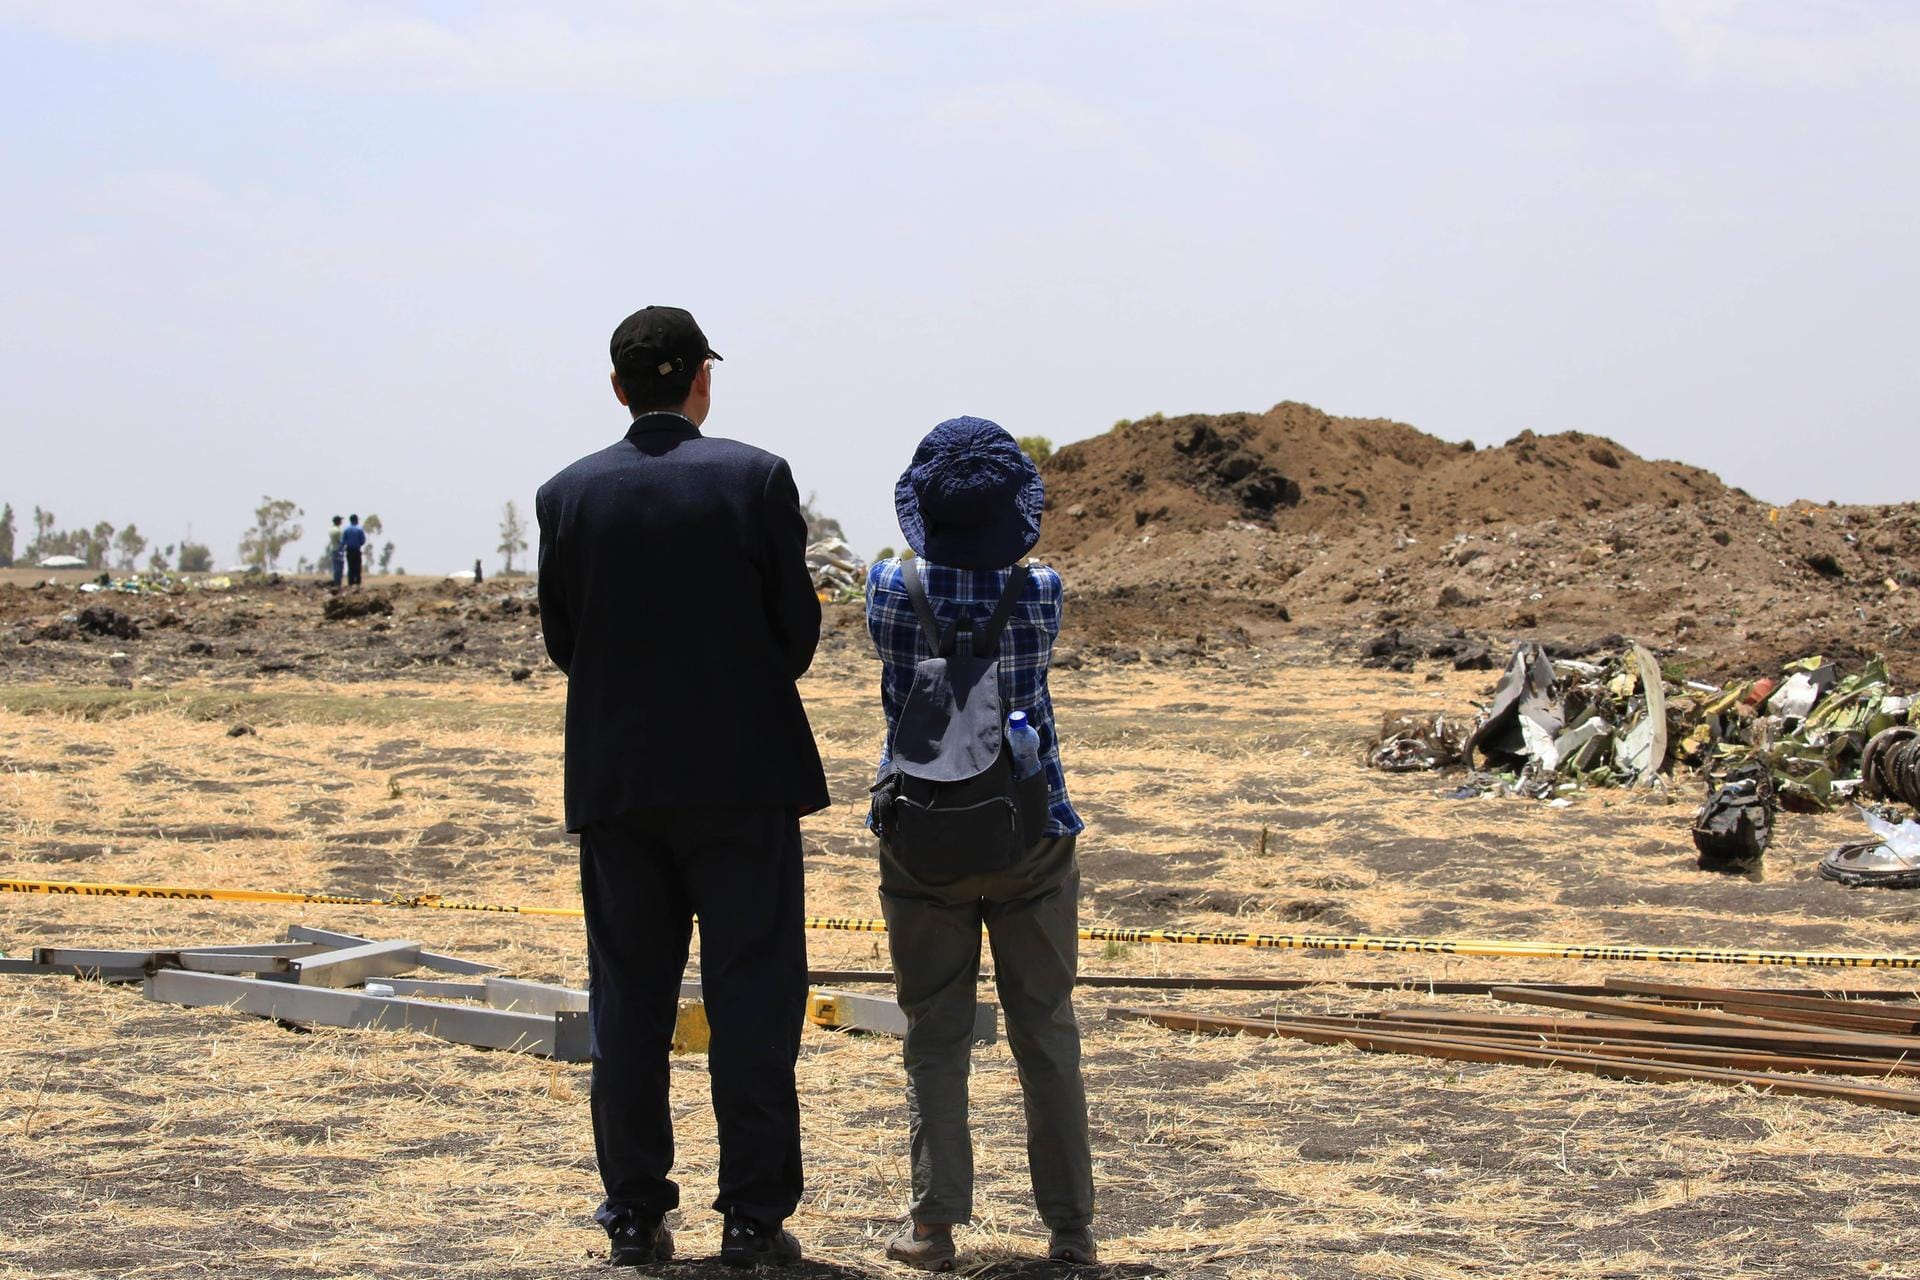 Äthiopien, März 2019: Auch hier stürzt eine Boeing 737 ab. Bei dem Absturz kommen 157 Menschen ums Leben – auch Deutsche sind unter den Opfern.